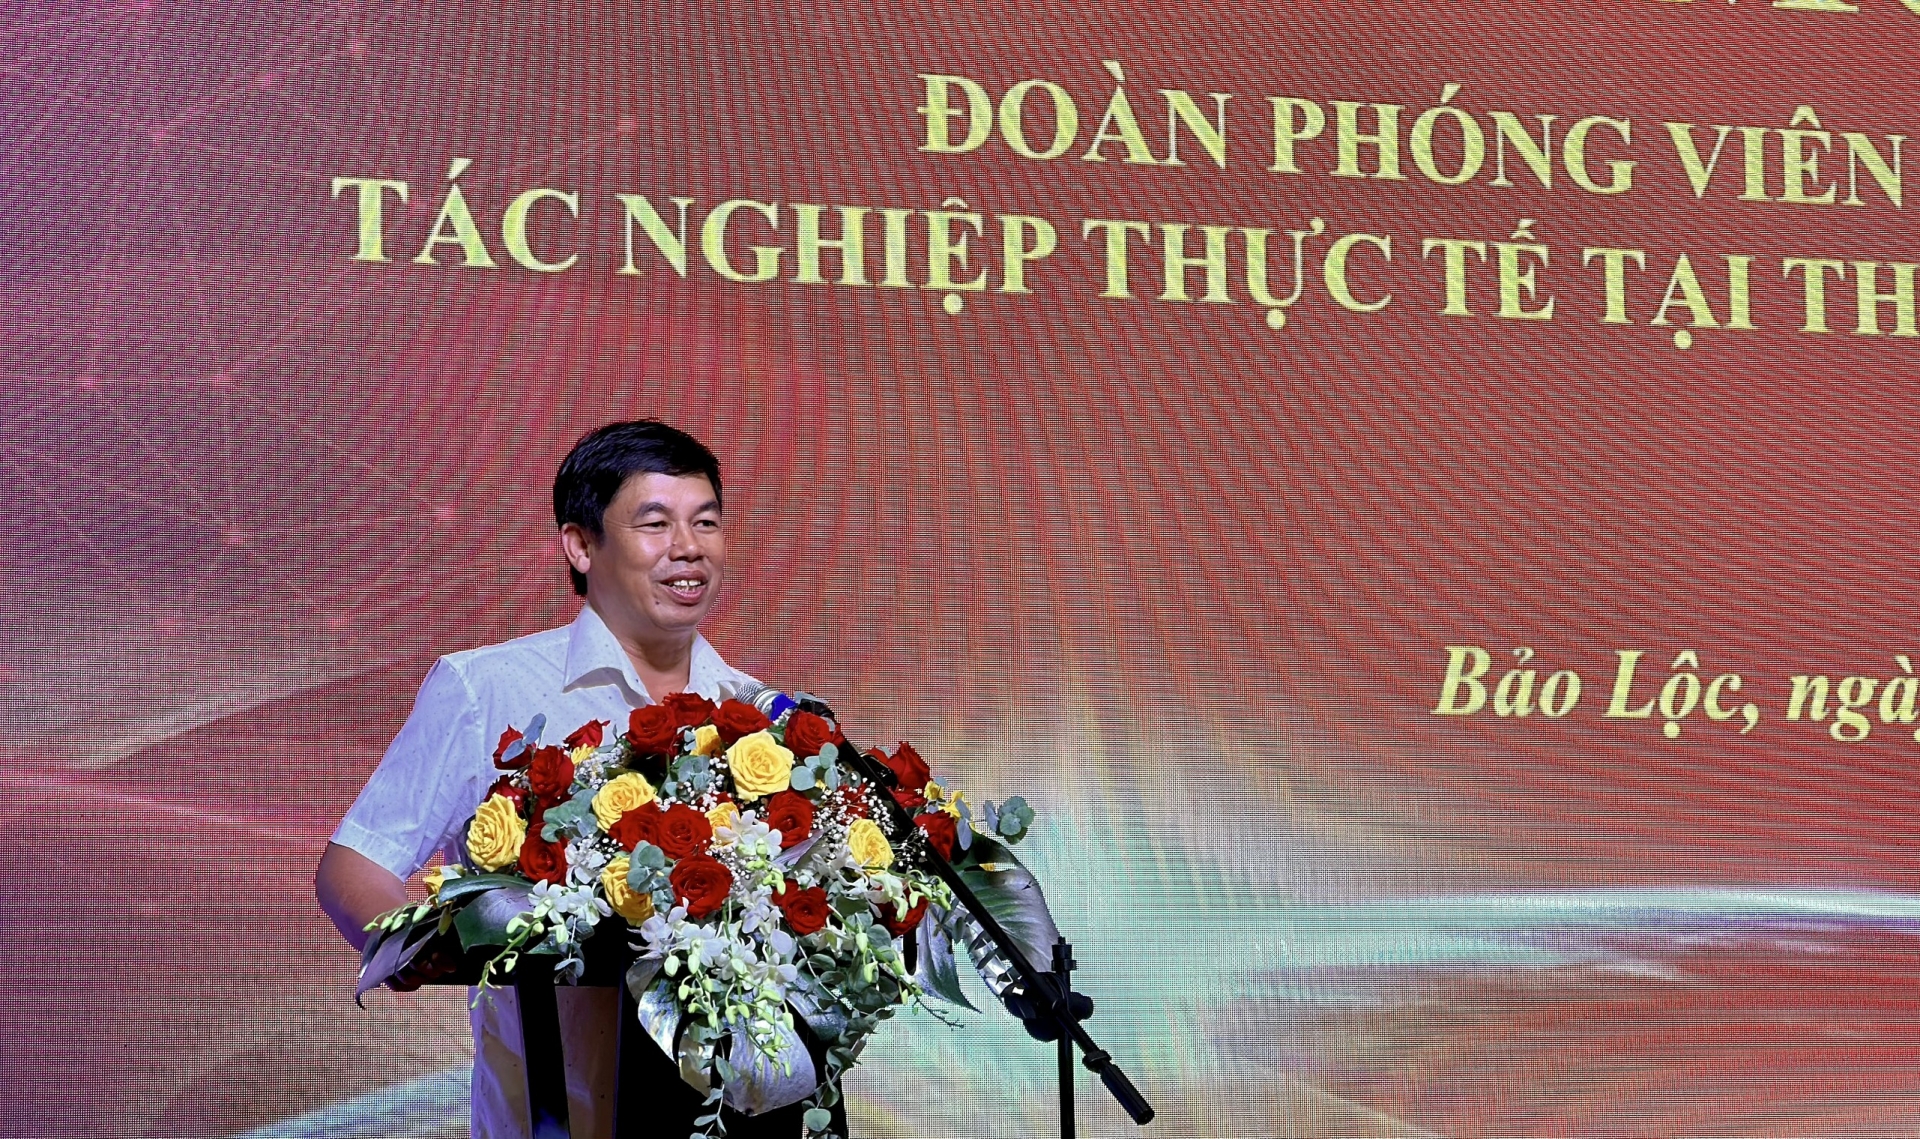 Hơn 20 phóng viên tham gia chương trình tác nghiệp tại Bảo Lộc